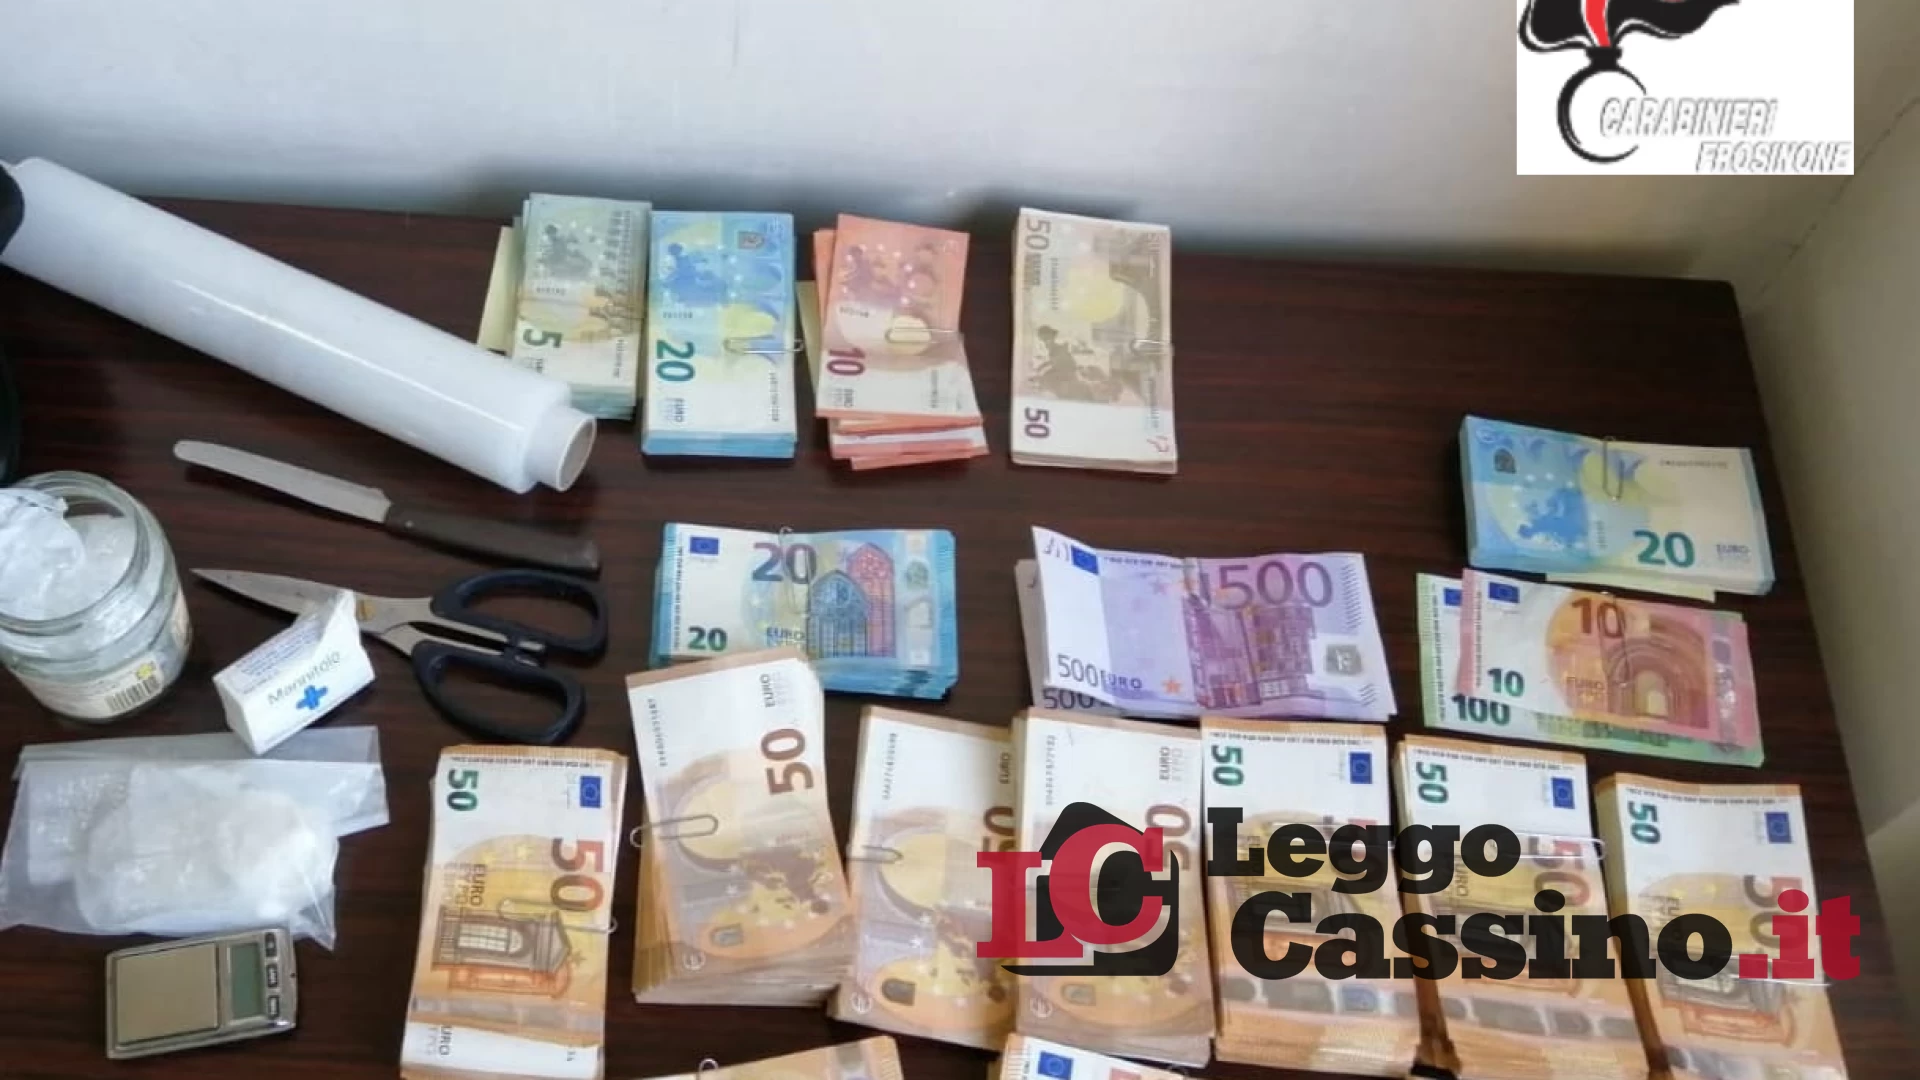 Spacciatore arrestato, sequestrati 29.500 euro